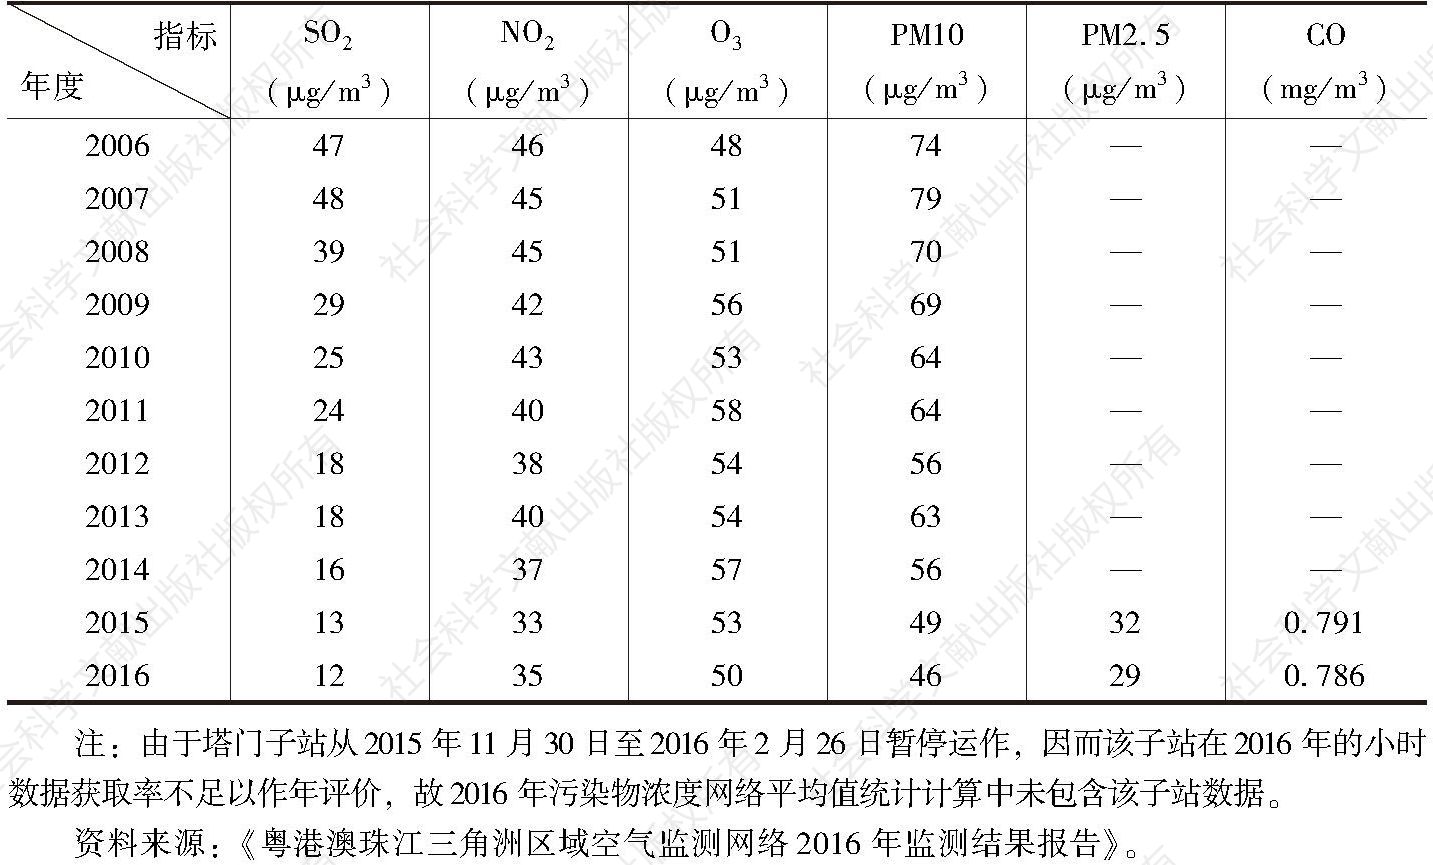 表1 粤港澳珠江三角洲区域空气监测网络污染物浓度的年平均值